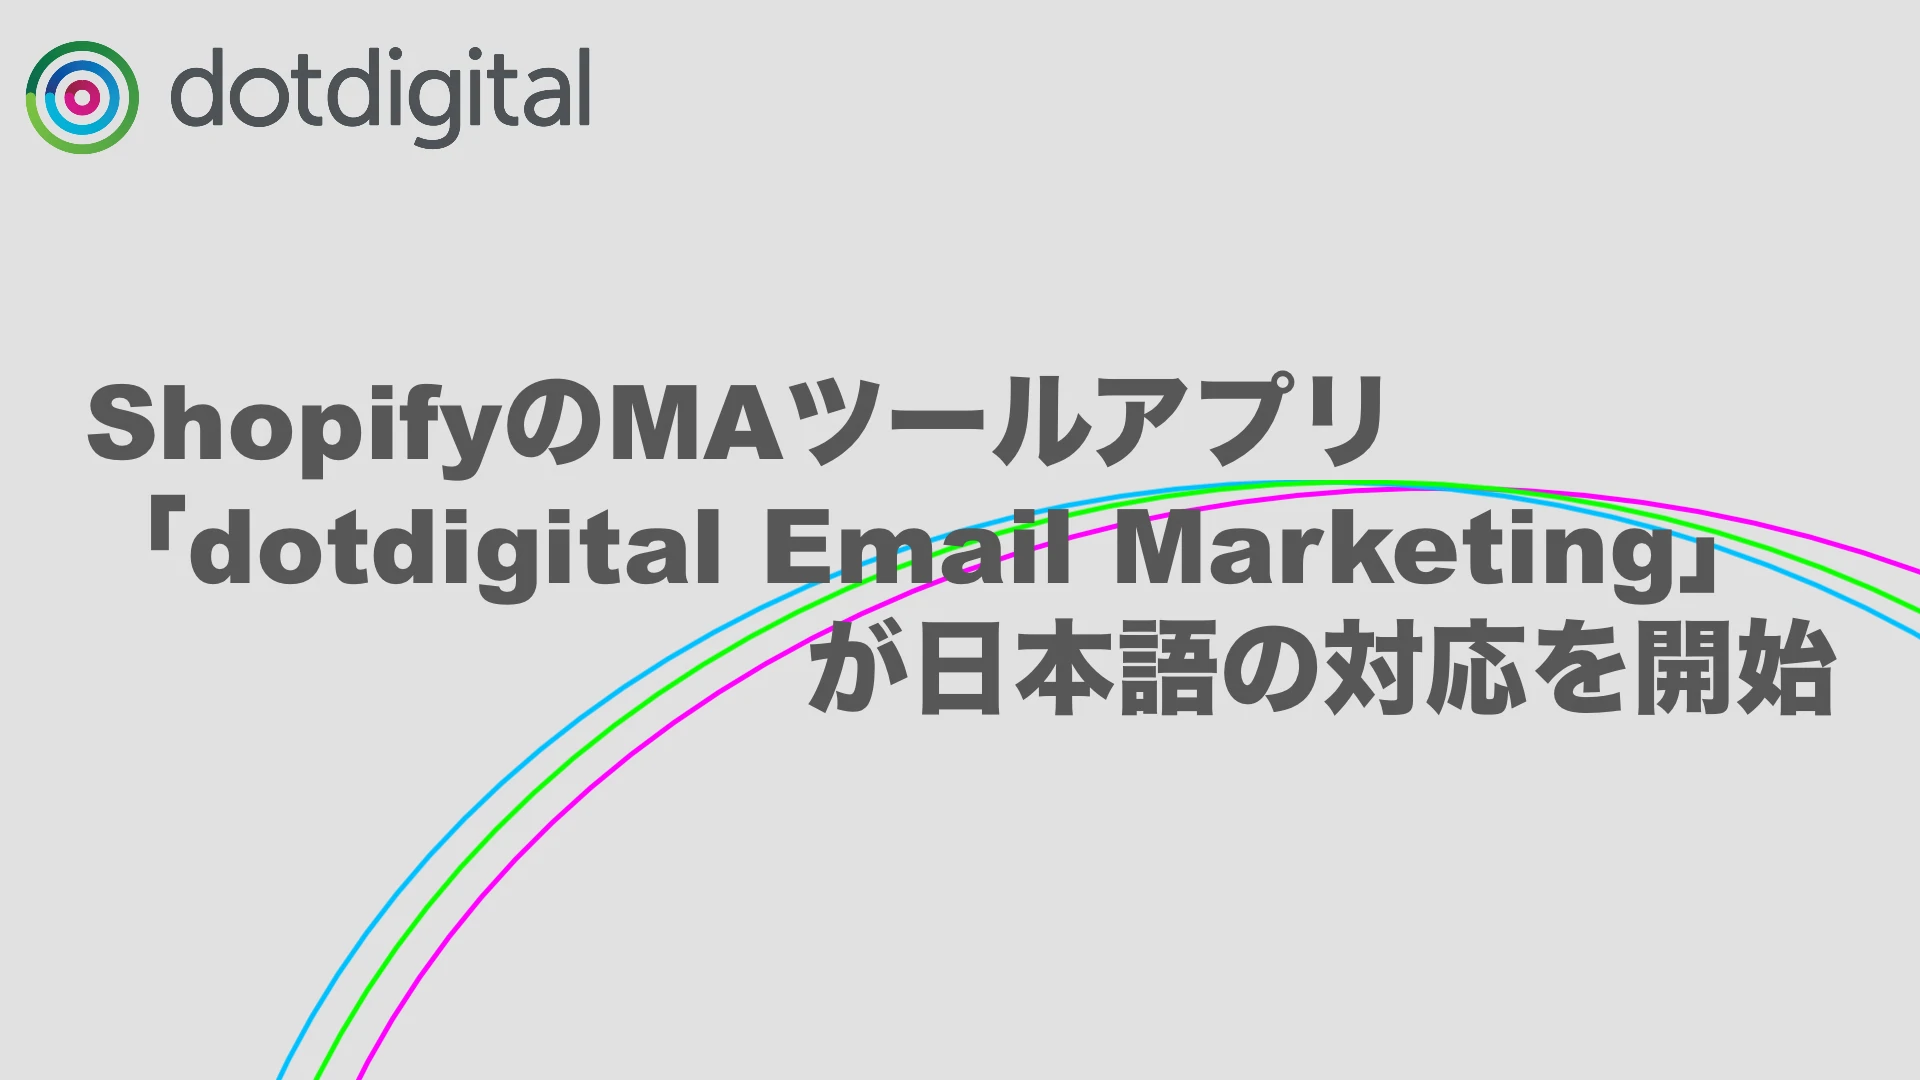 ShopifyのMAツールアプリ「dotdigital Email Marketing」が日本語の対応を開始